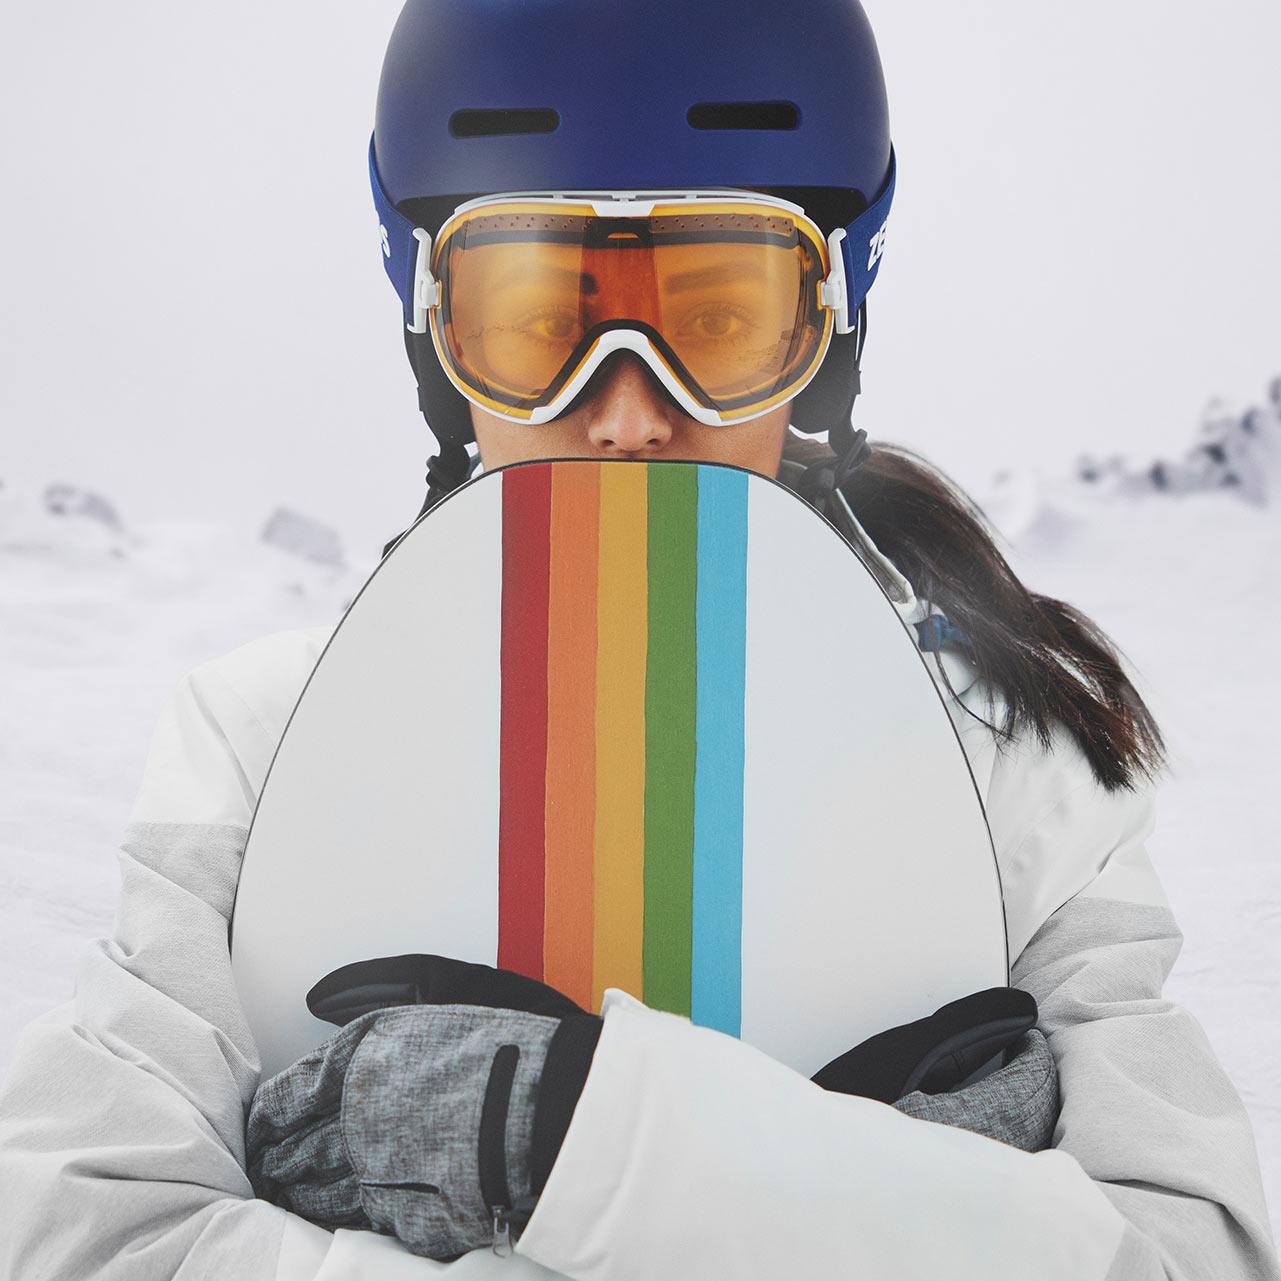 Una donna indossa un casco blu e una maschera da sci ZEISS con visiera trasparente.